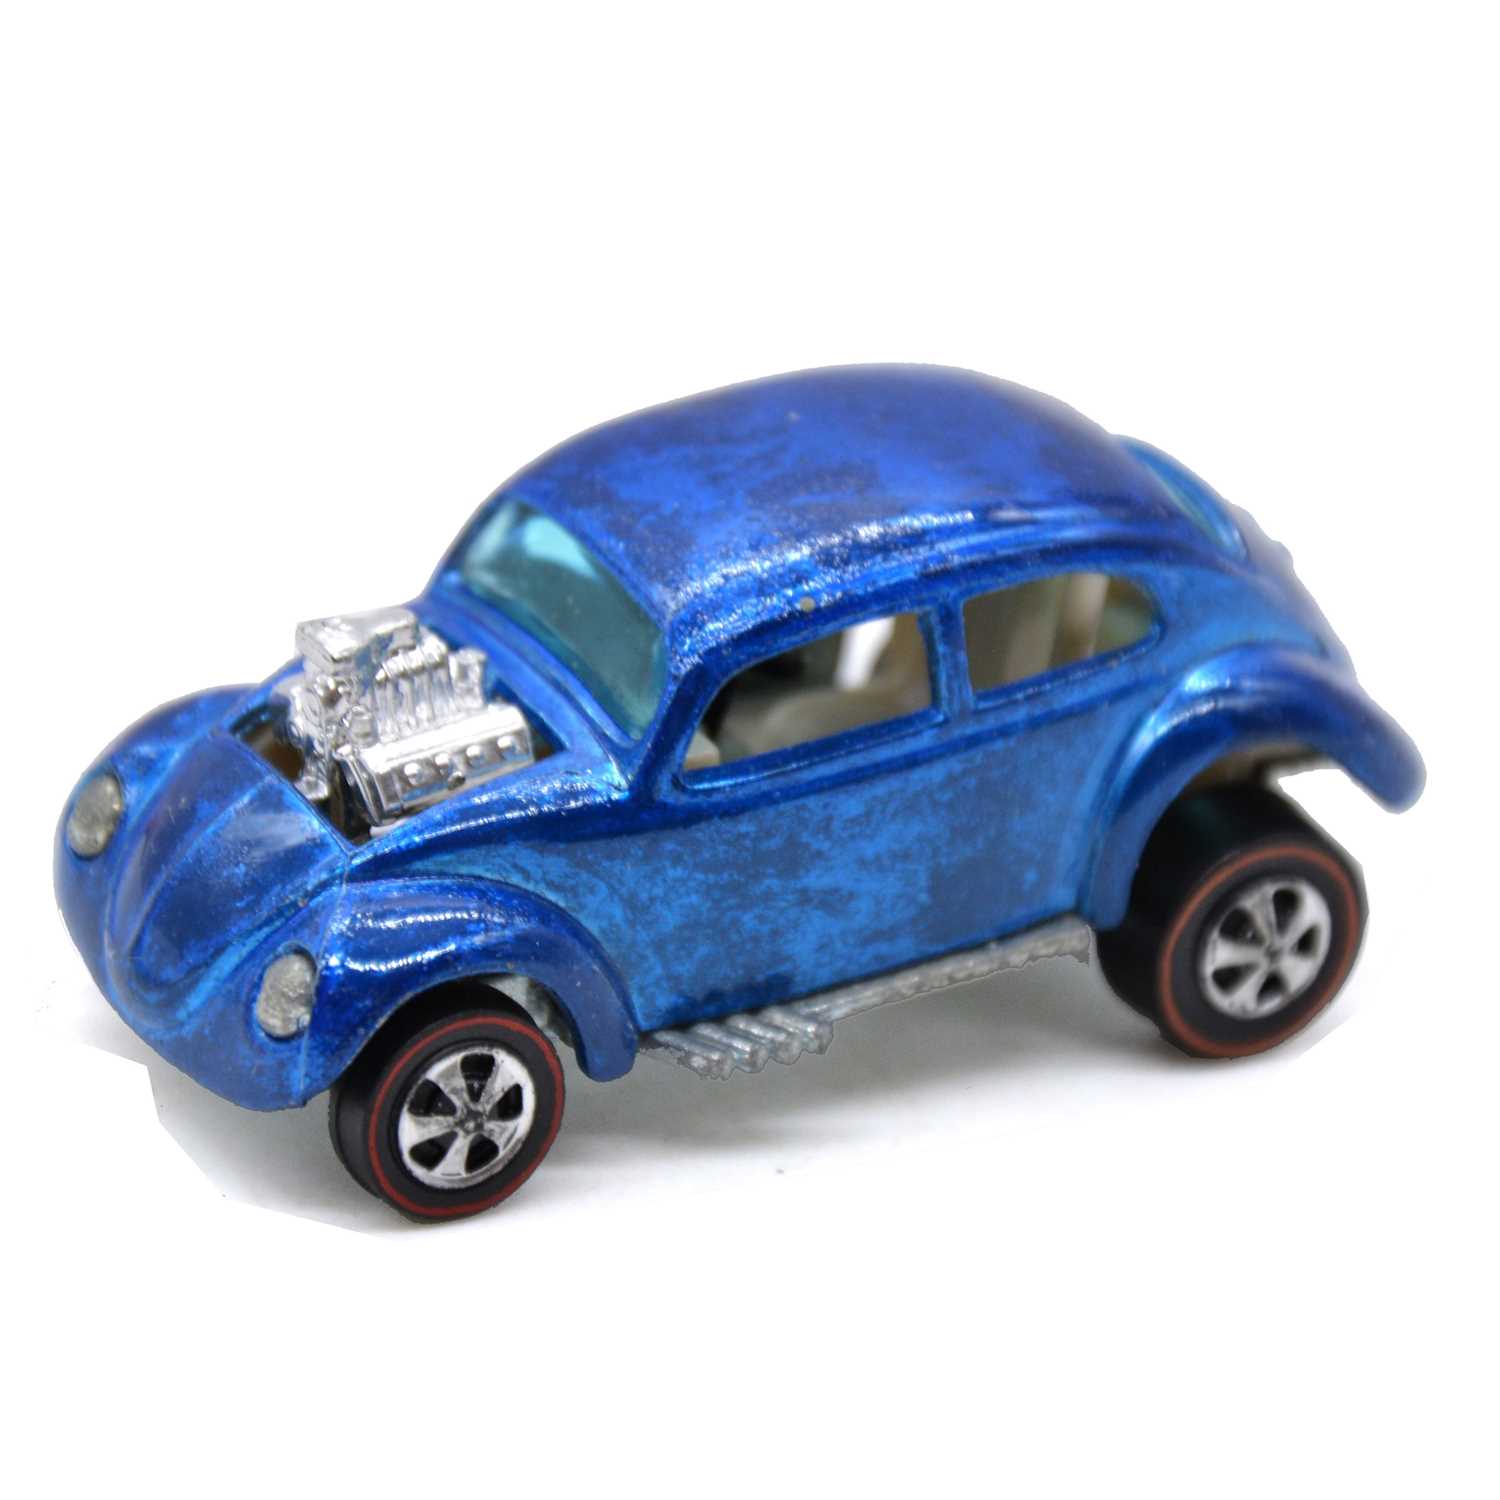 Hot Wheels Redline die-cast VW Beetle custom, no sunroof - Image 2 of 4